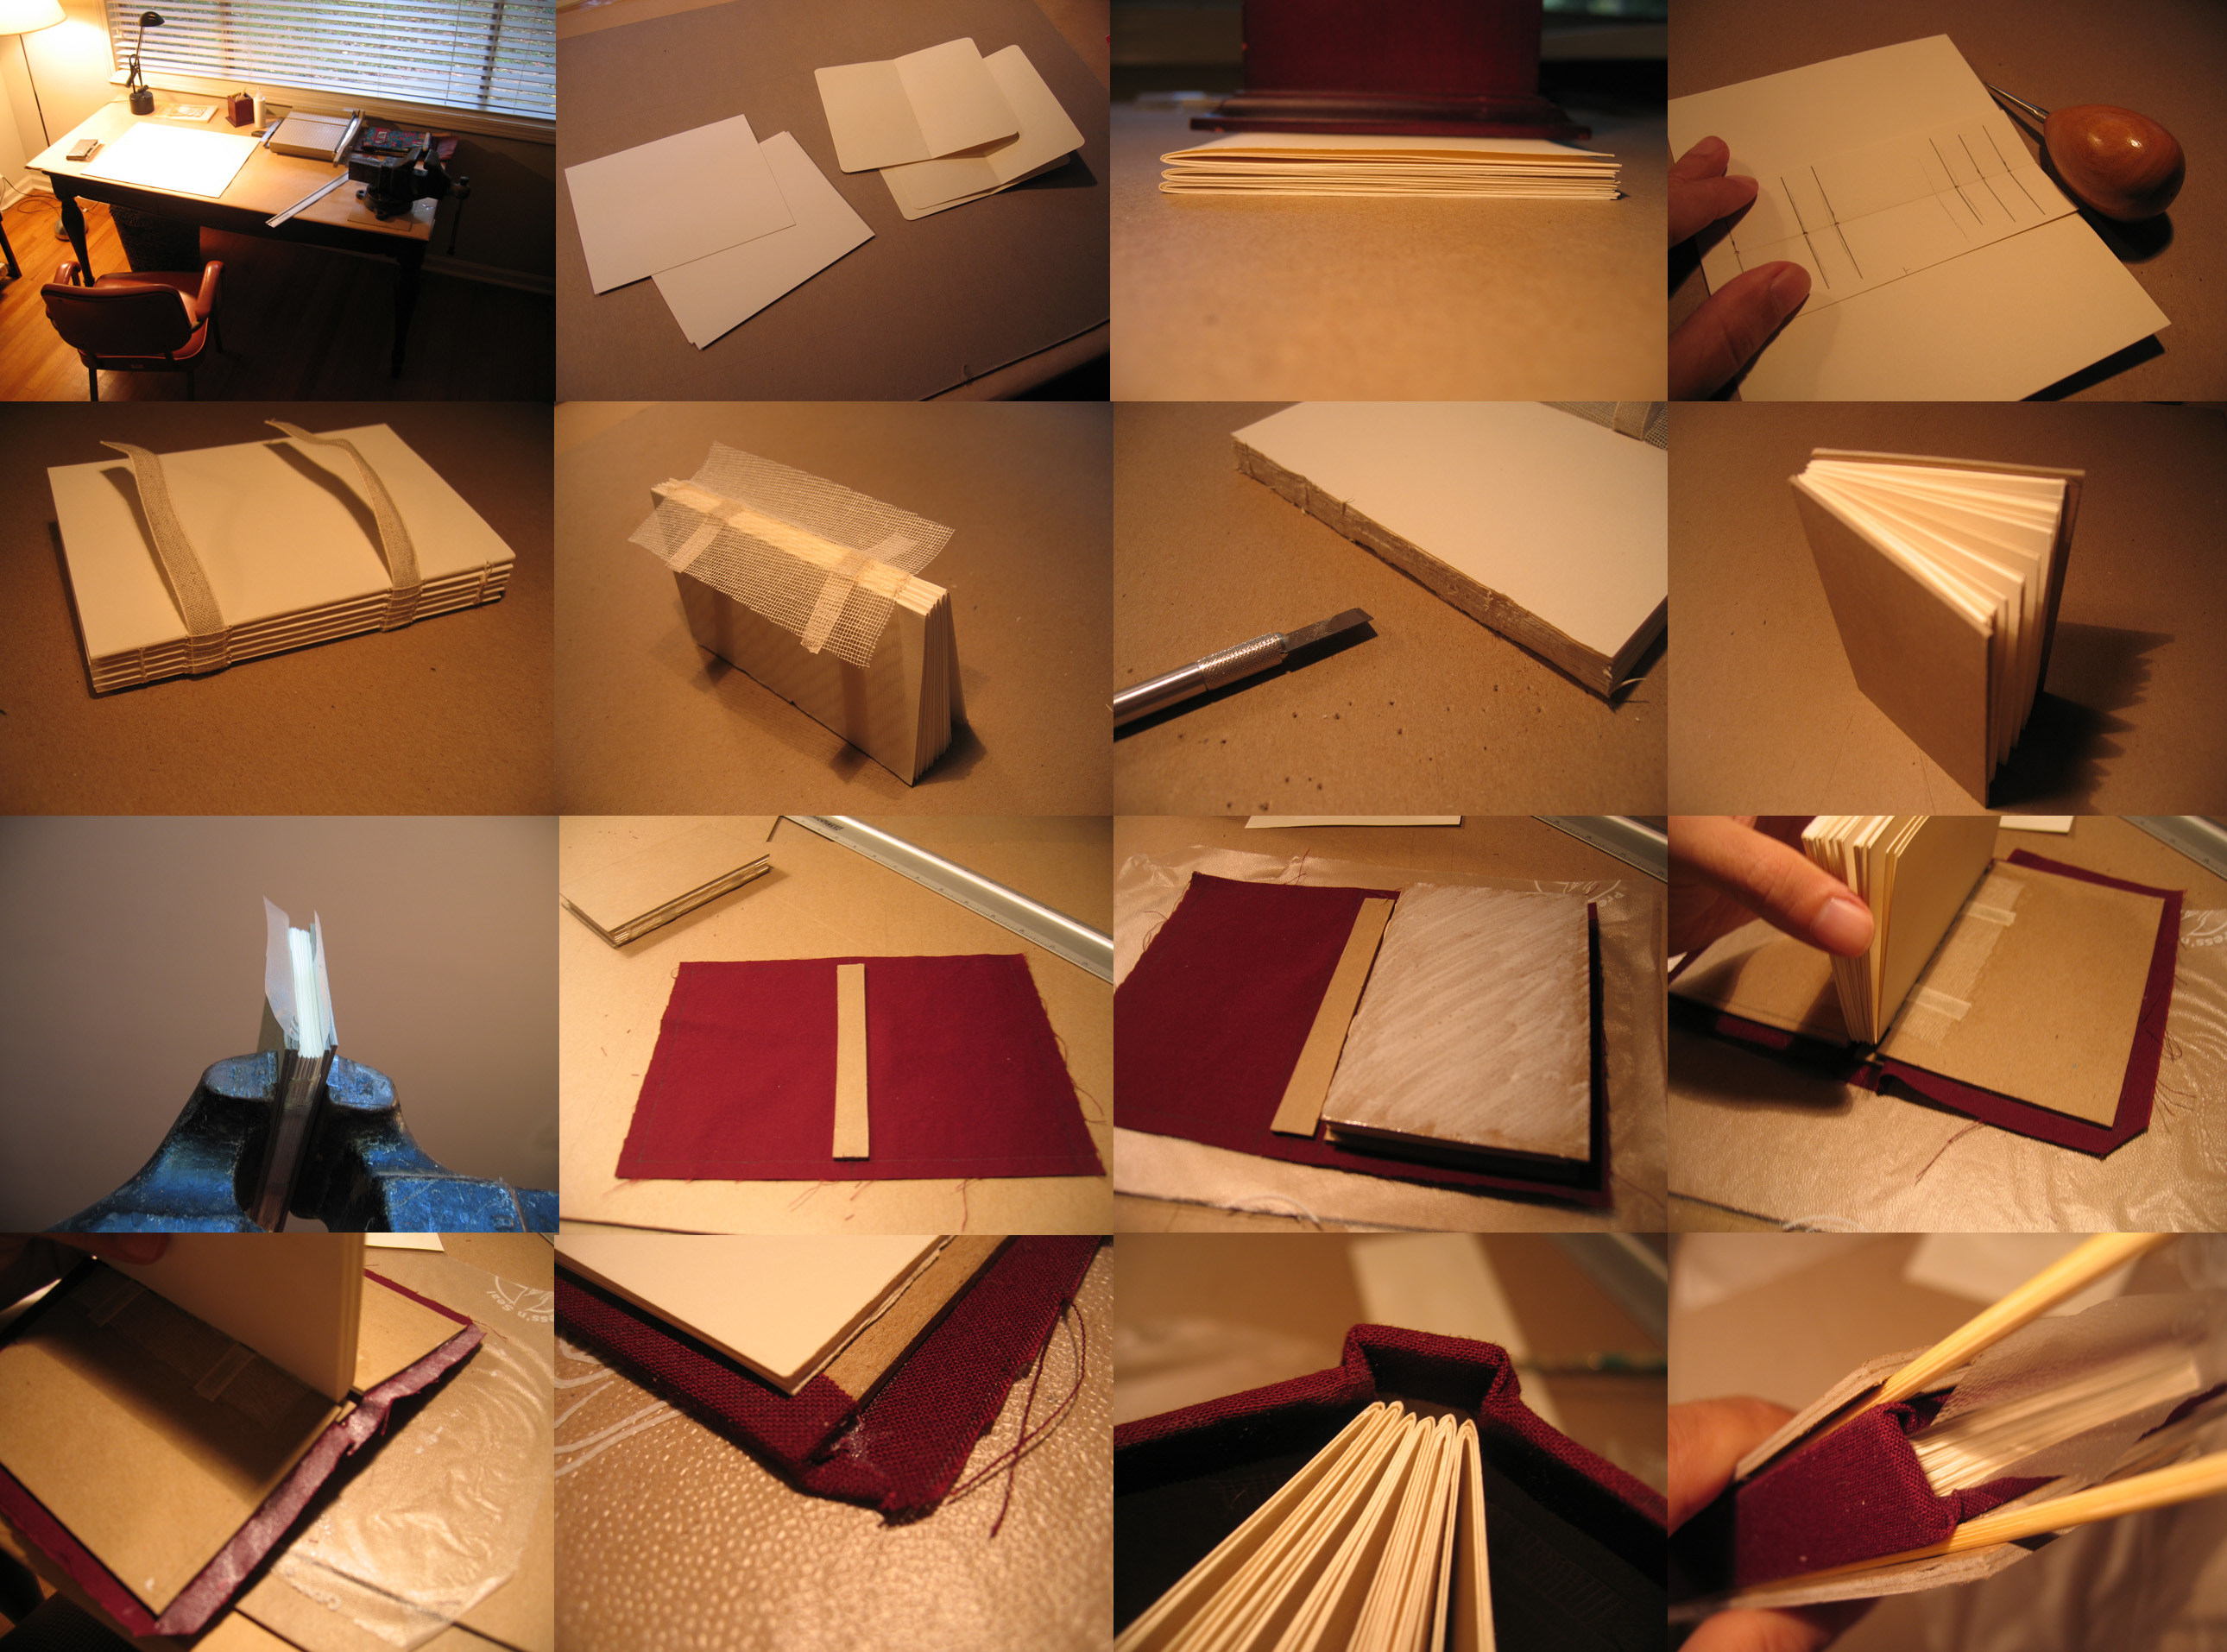 Закладки для книг своими руками: фото необычных идей оформления, необходимые материалы создания своими руками + пошаговый мастер-класс